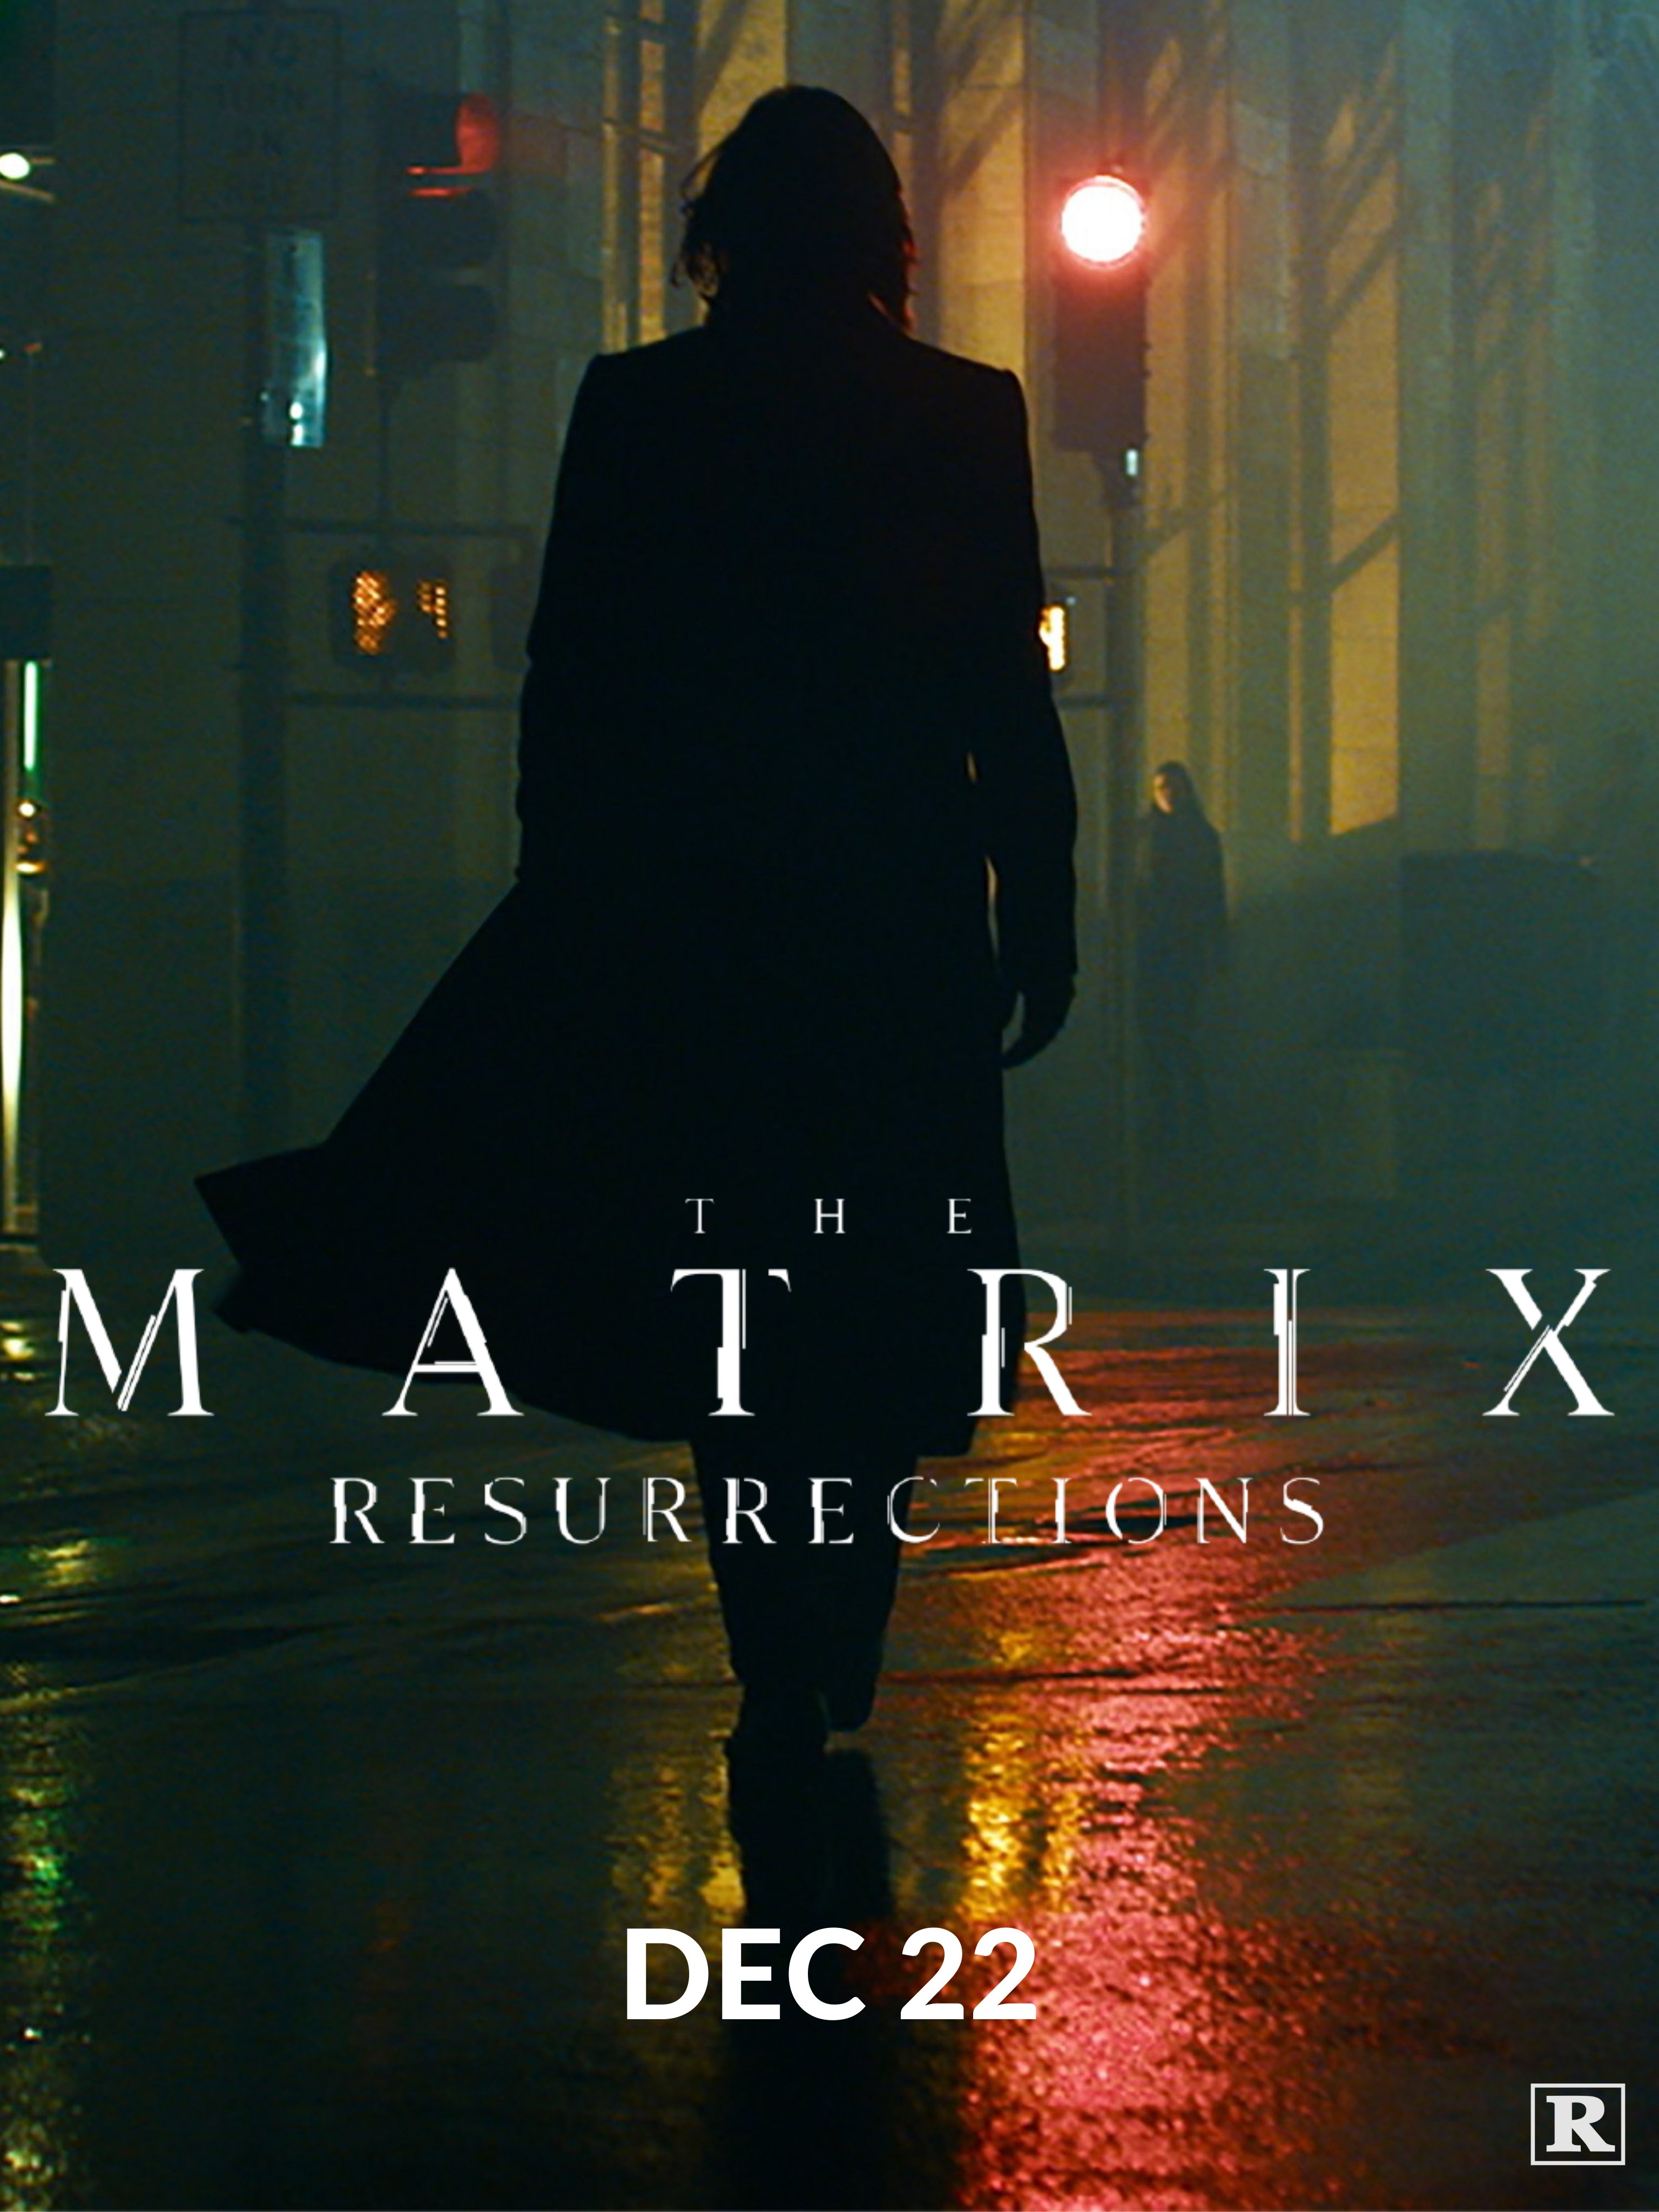 Новый постер фильма «Матрица 4: Воскрешение» раскрыл образ Нео